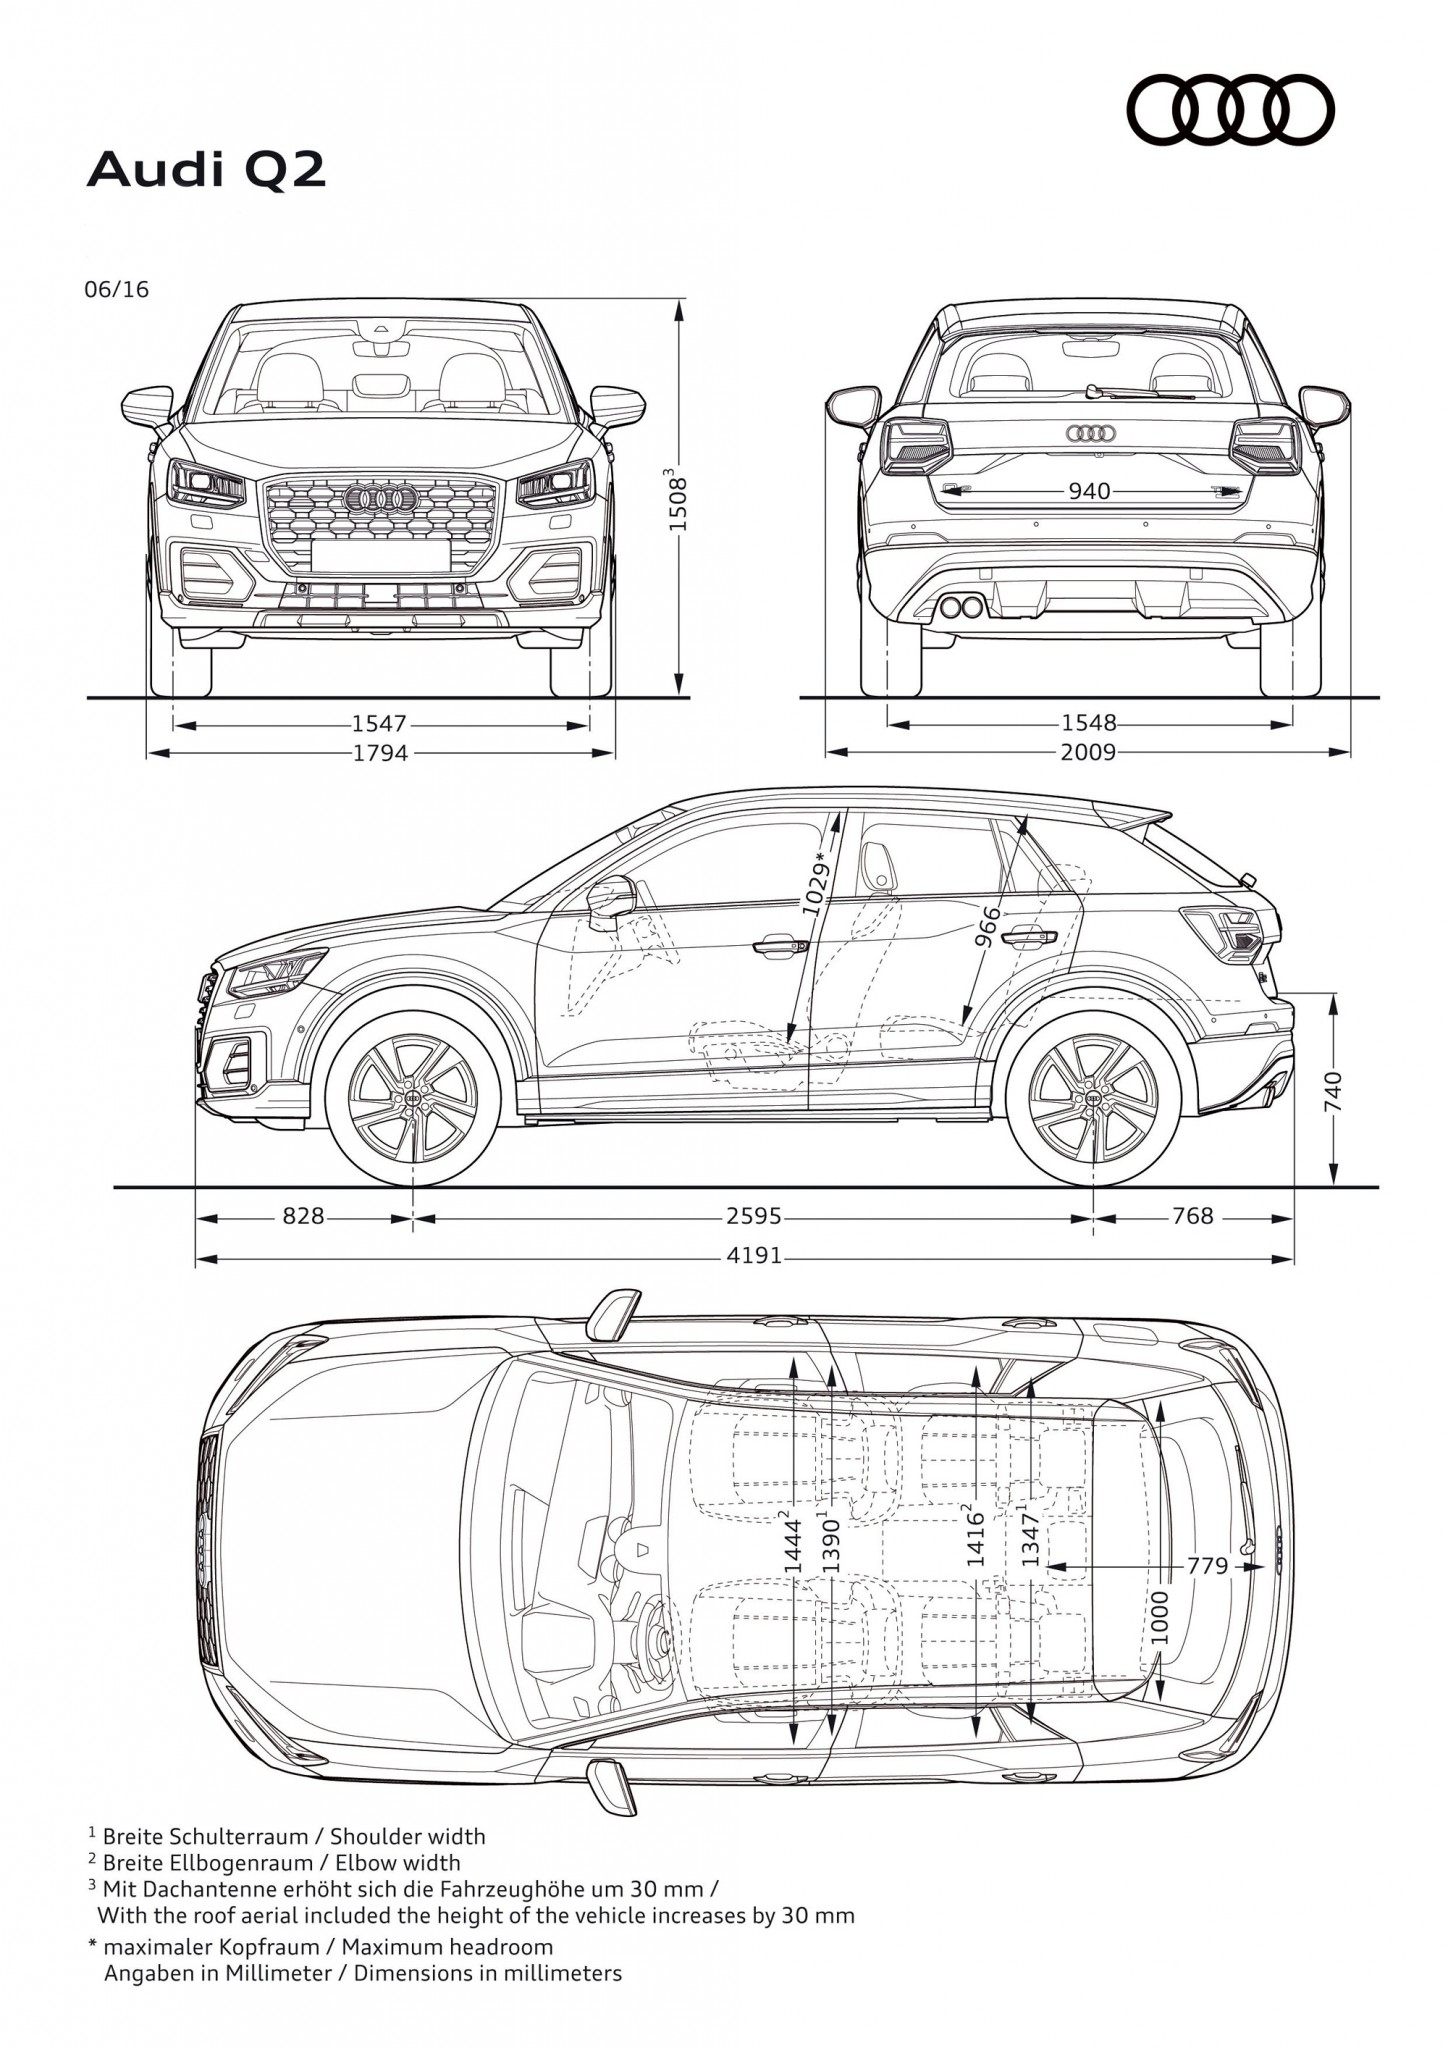 Dimensiones del Audi Q2 2019